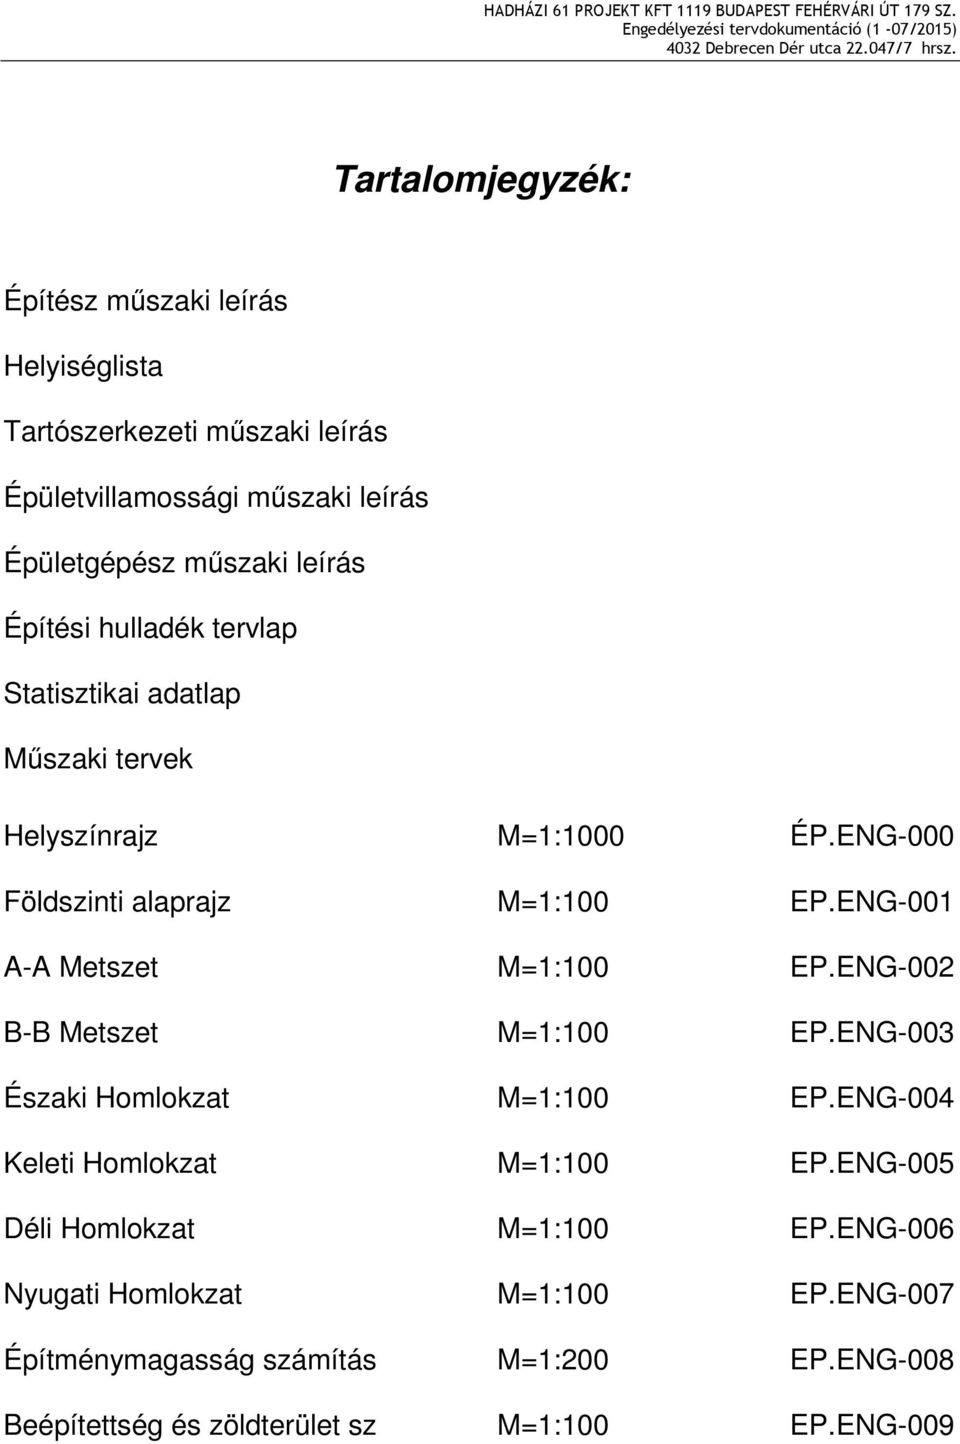 ENG-001 A-A Metszet M=1:100 EP.ENG-002 B-B Metszet M=1:100 EP.ENG-003 Északi Homlokzat M=1:100 EP.ENG-004 Keleti Homlokzat M=1:100 EP.